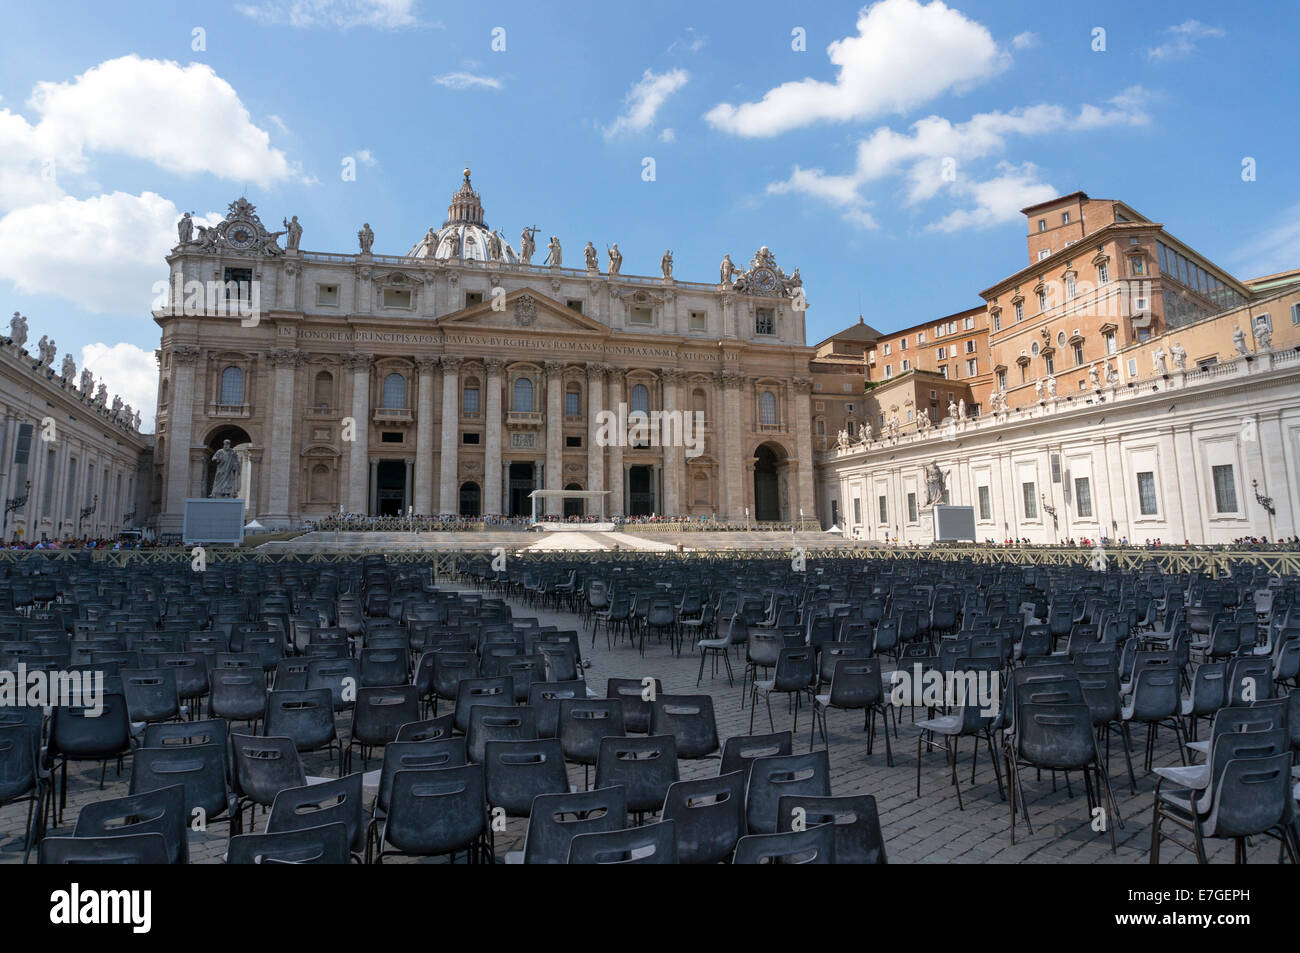 Città del Vaticano: vista frontale della Basilica di San Pietro. Foto dal 4 settembre 2014. Foto Stock